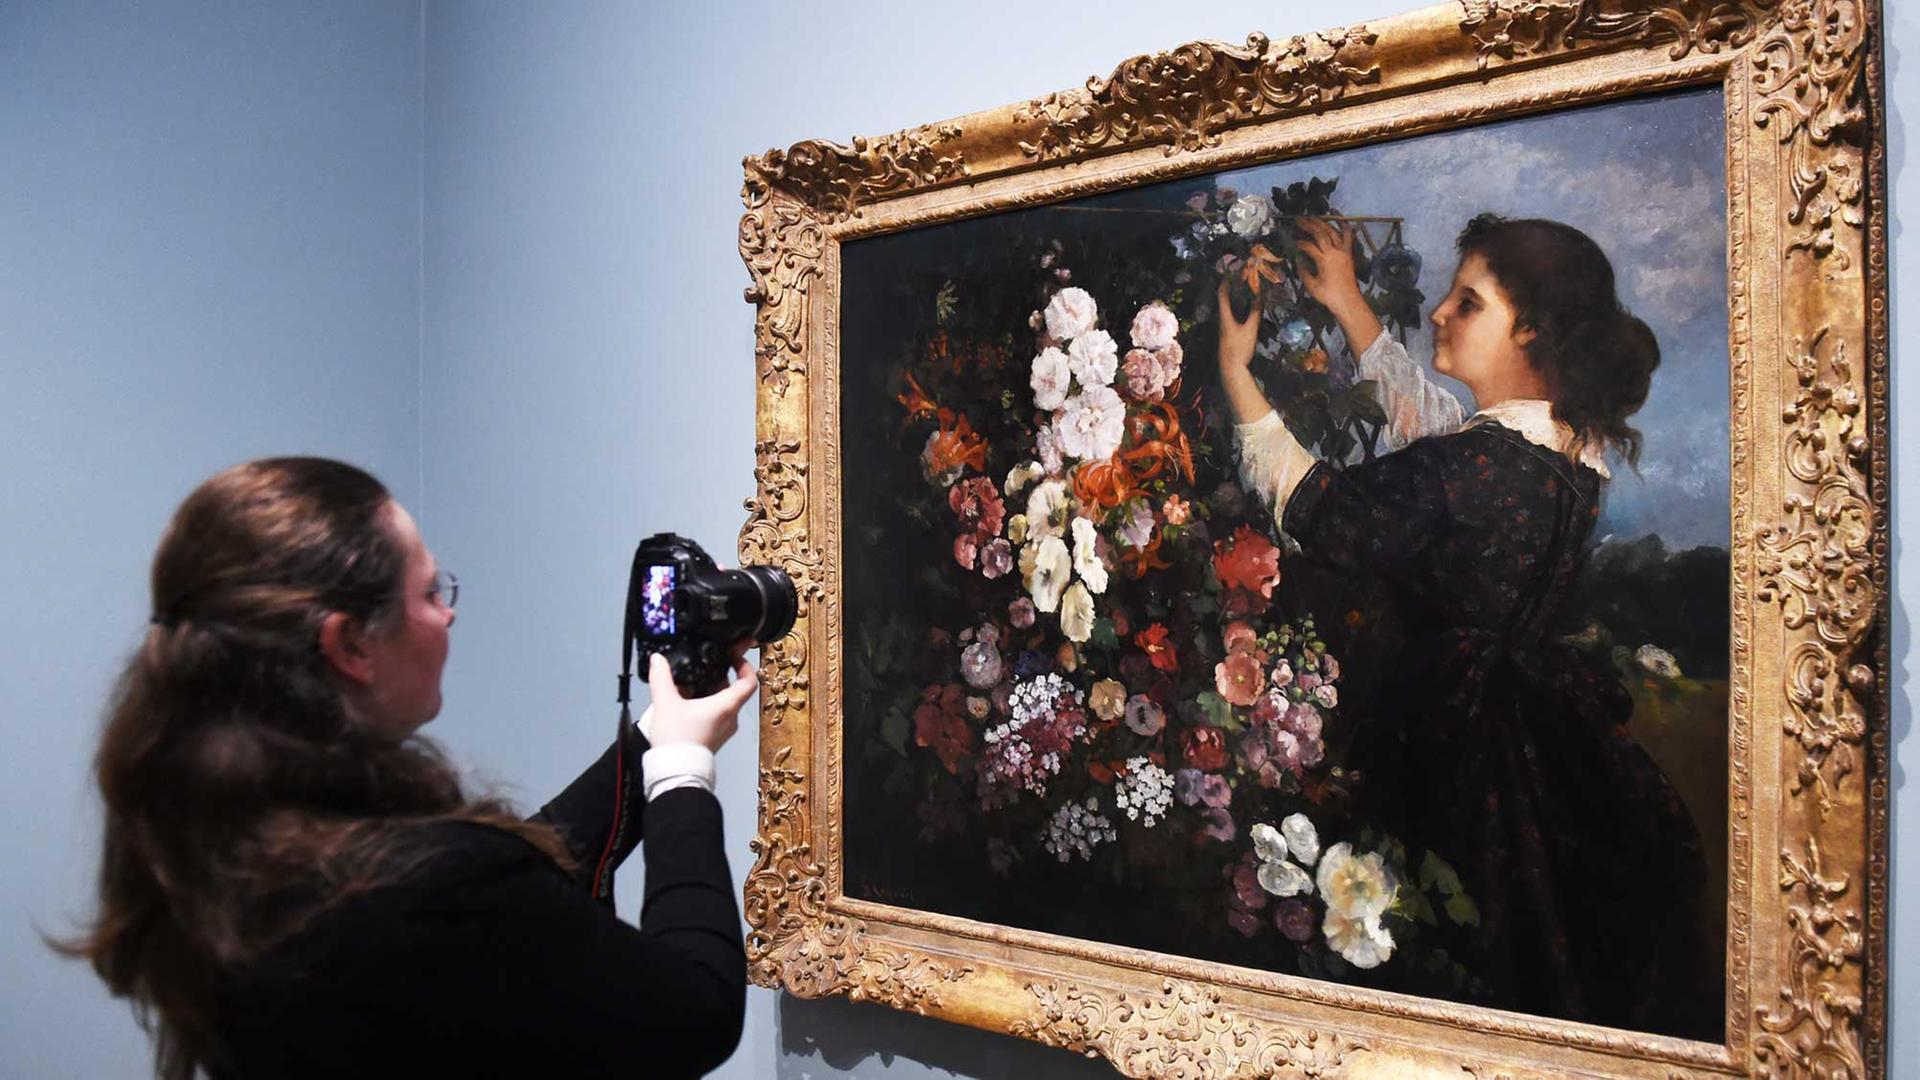 Eine Besucherin fotografiert das Gemälde "Les Trellis" von Gustave Courbet, das nach dem Vorbild des Malers Delacroix entstand. Es hängt in der Ausstellung "Delacroix and the rise of Modern art" in der National gallery in London.